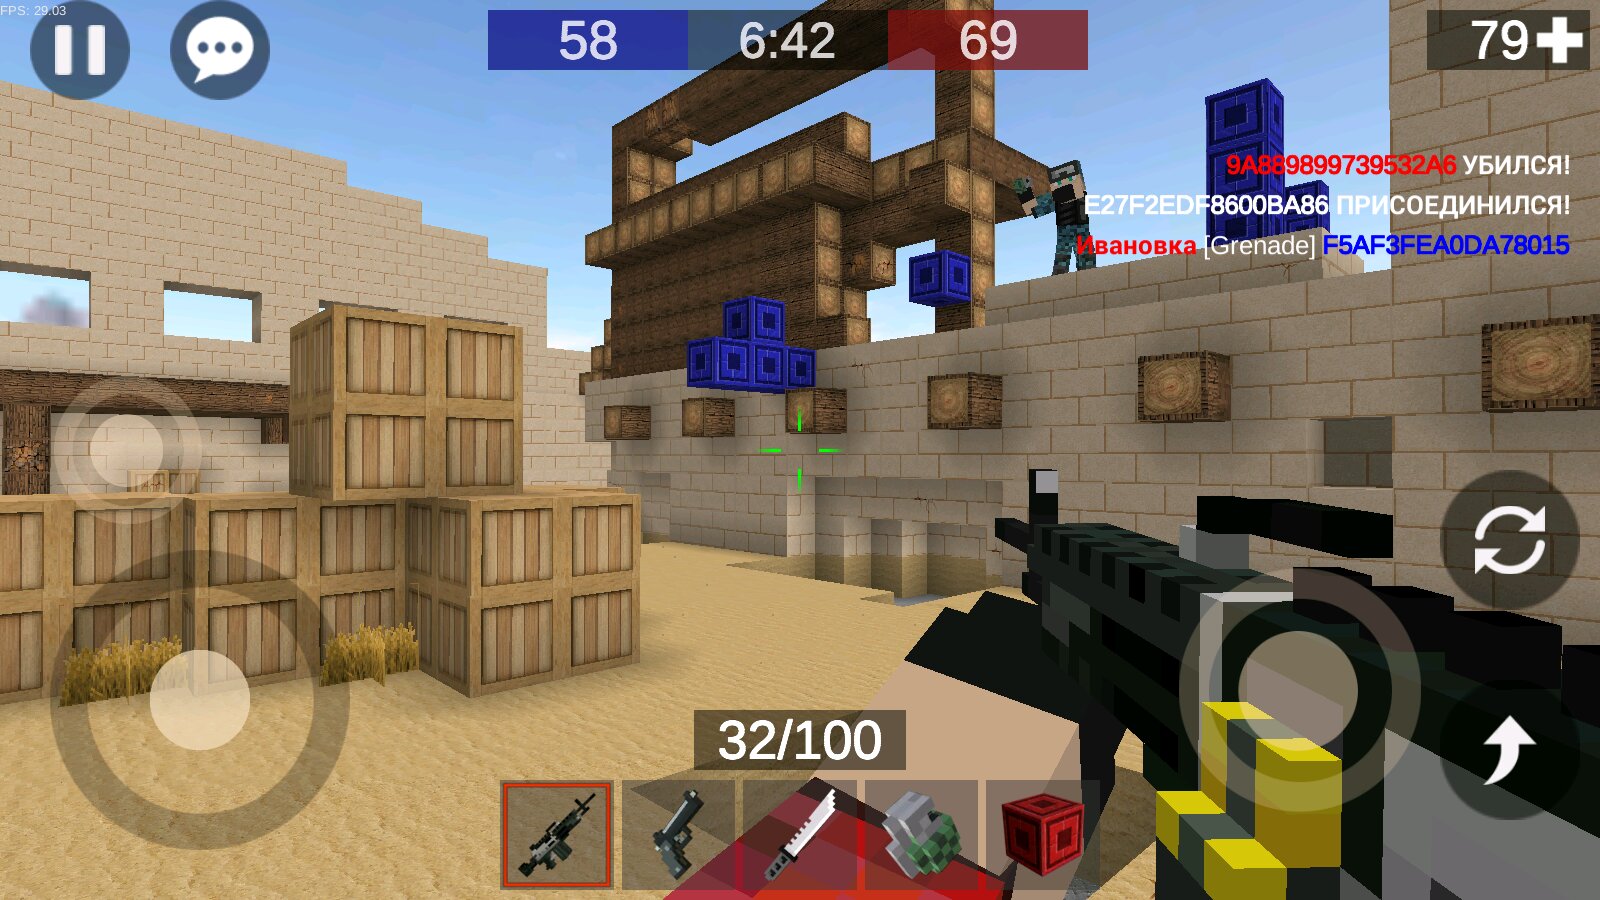 Игра карты стрелялки. Игра Pixel Combats 2. Pixel Combat игра. Pixel Combats 2 андроид. Пиксельные игры стрелялки.